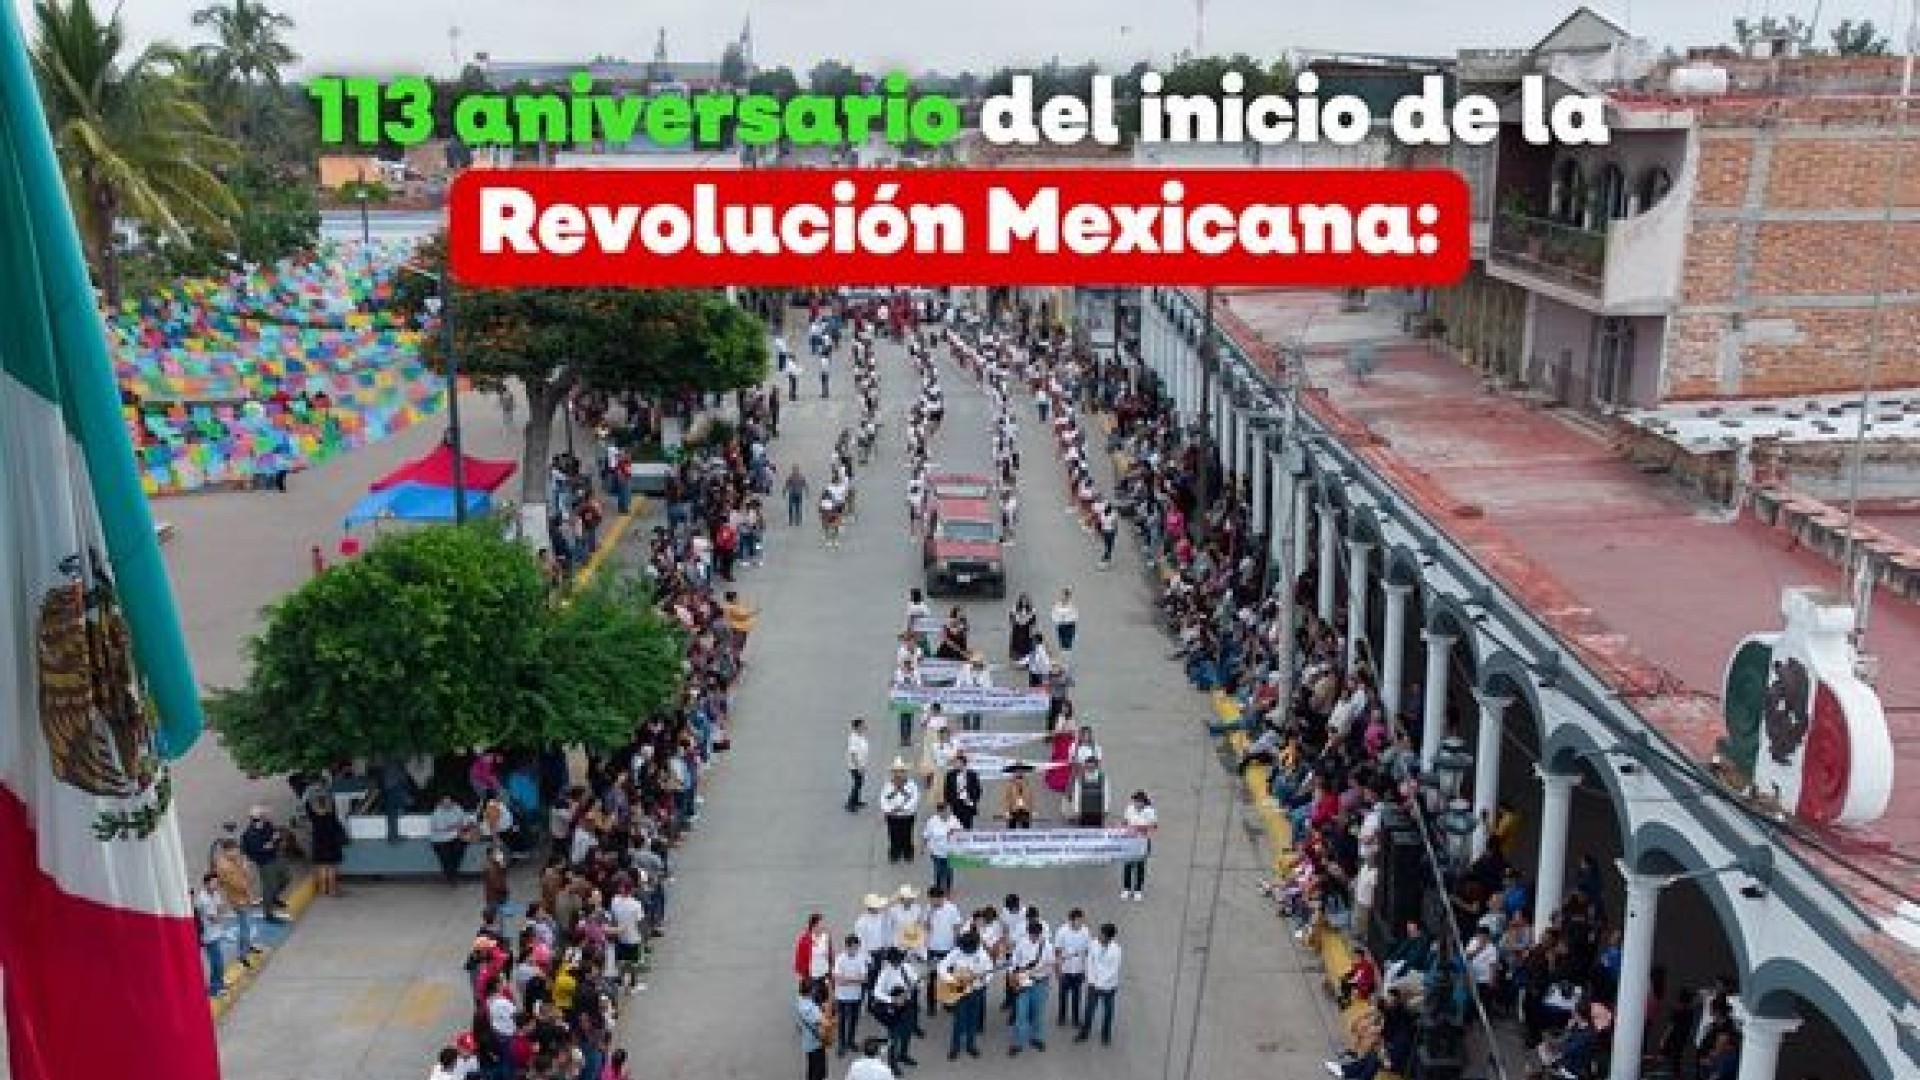 113 aniversario del inicio de la Revolución Mexicana